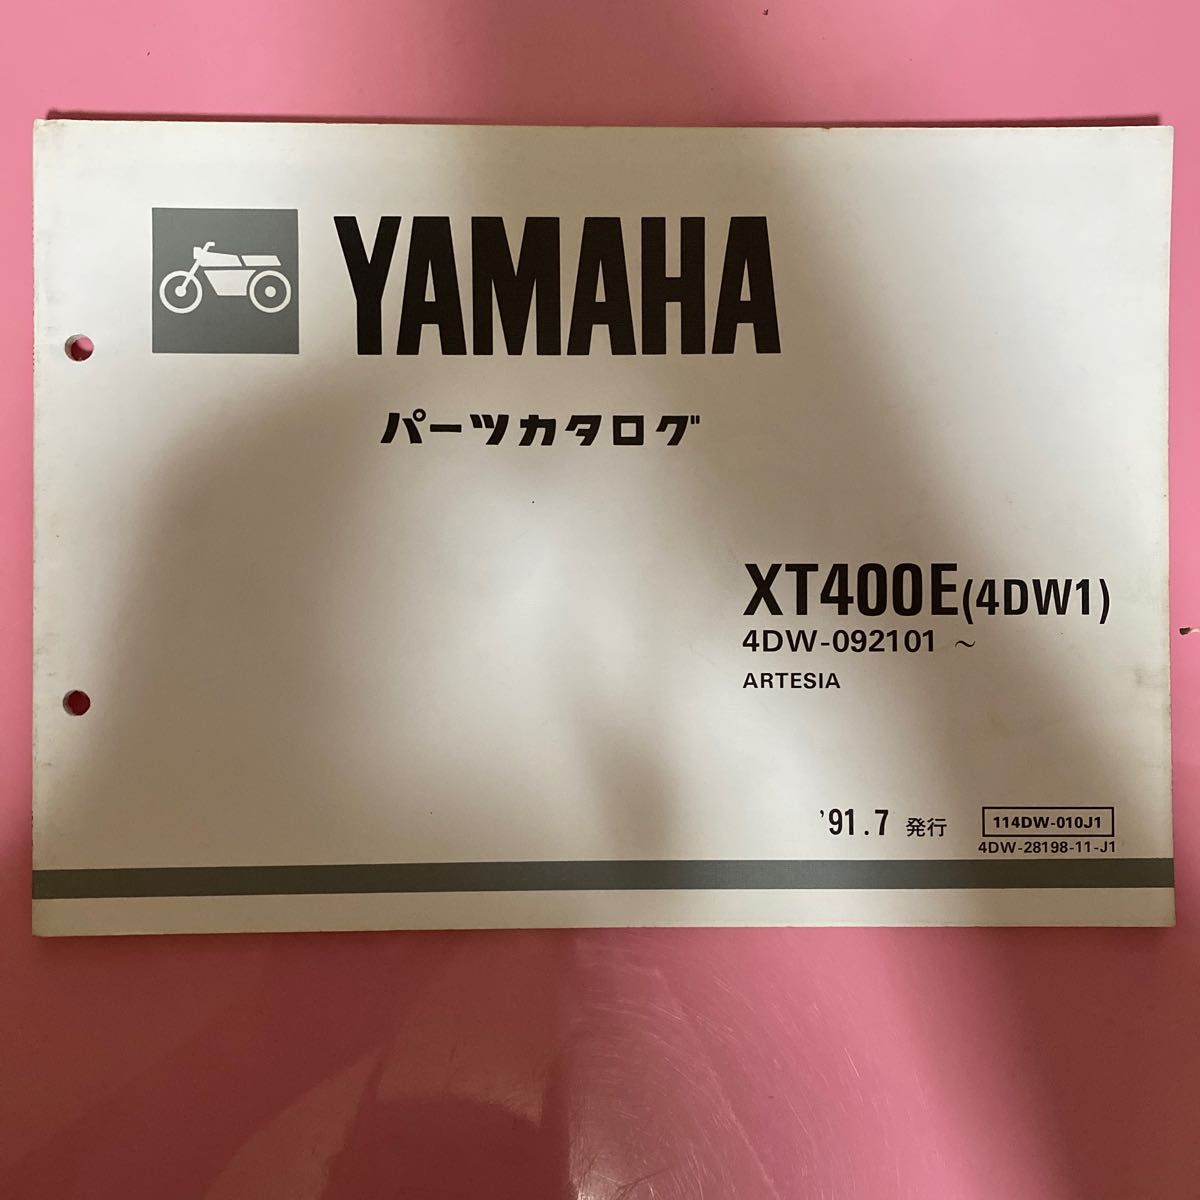 YAMAHA XT400E 4DW1 パーツカタログ ヤマハ